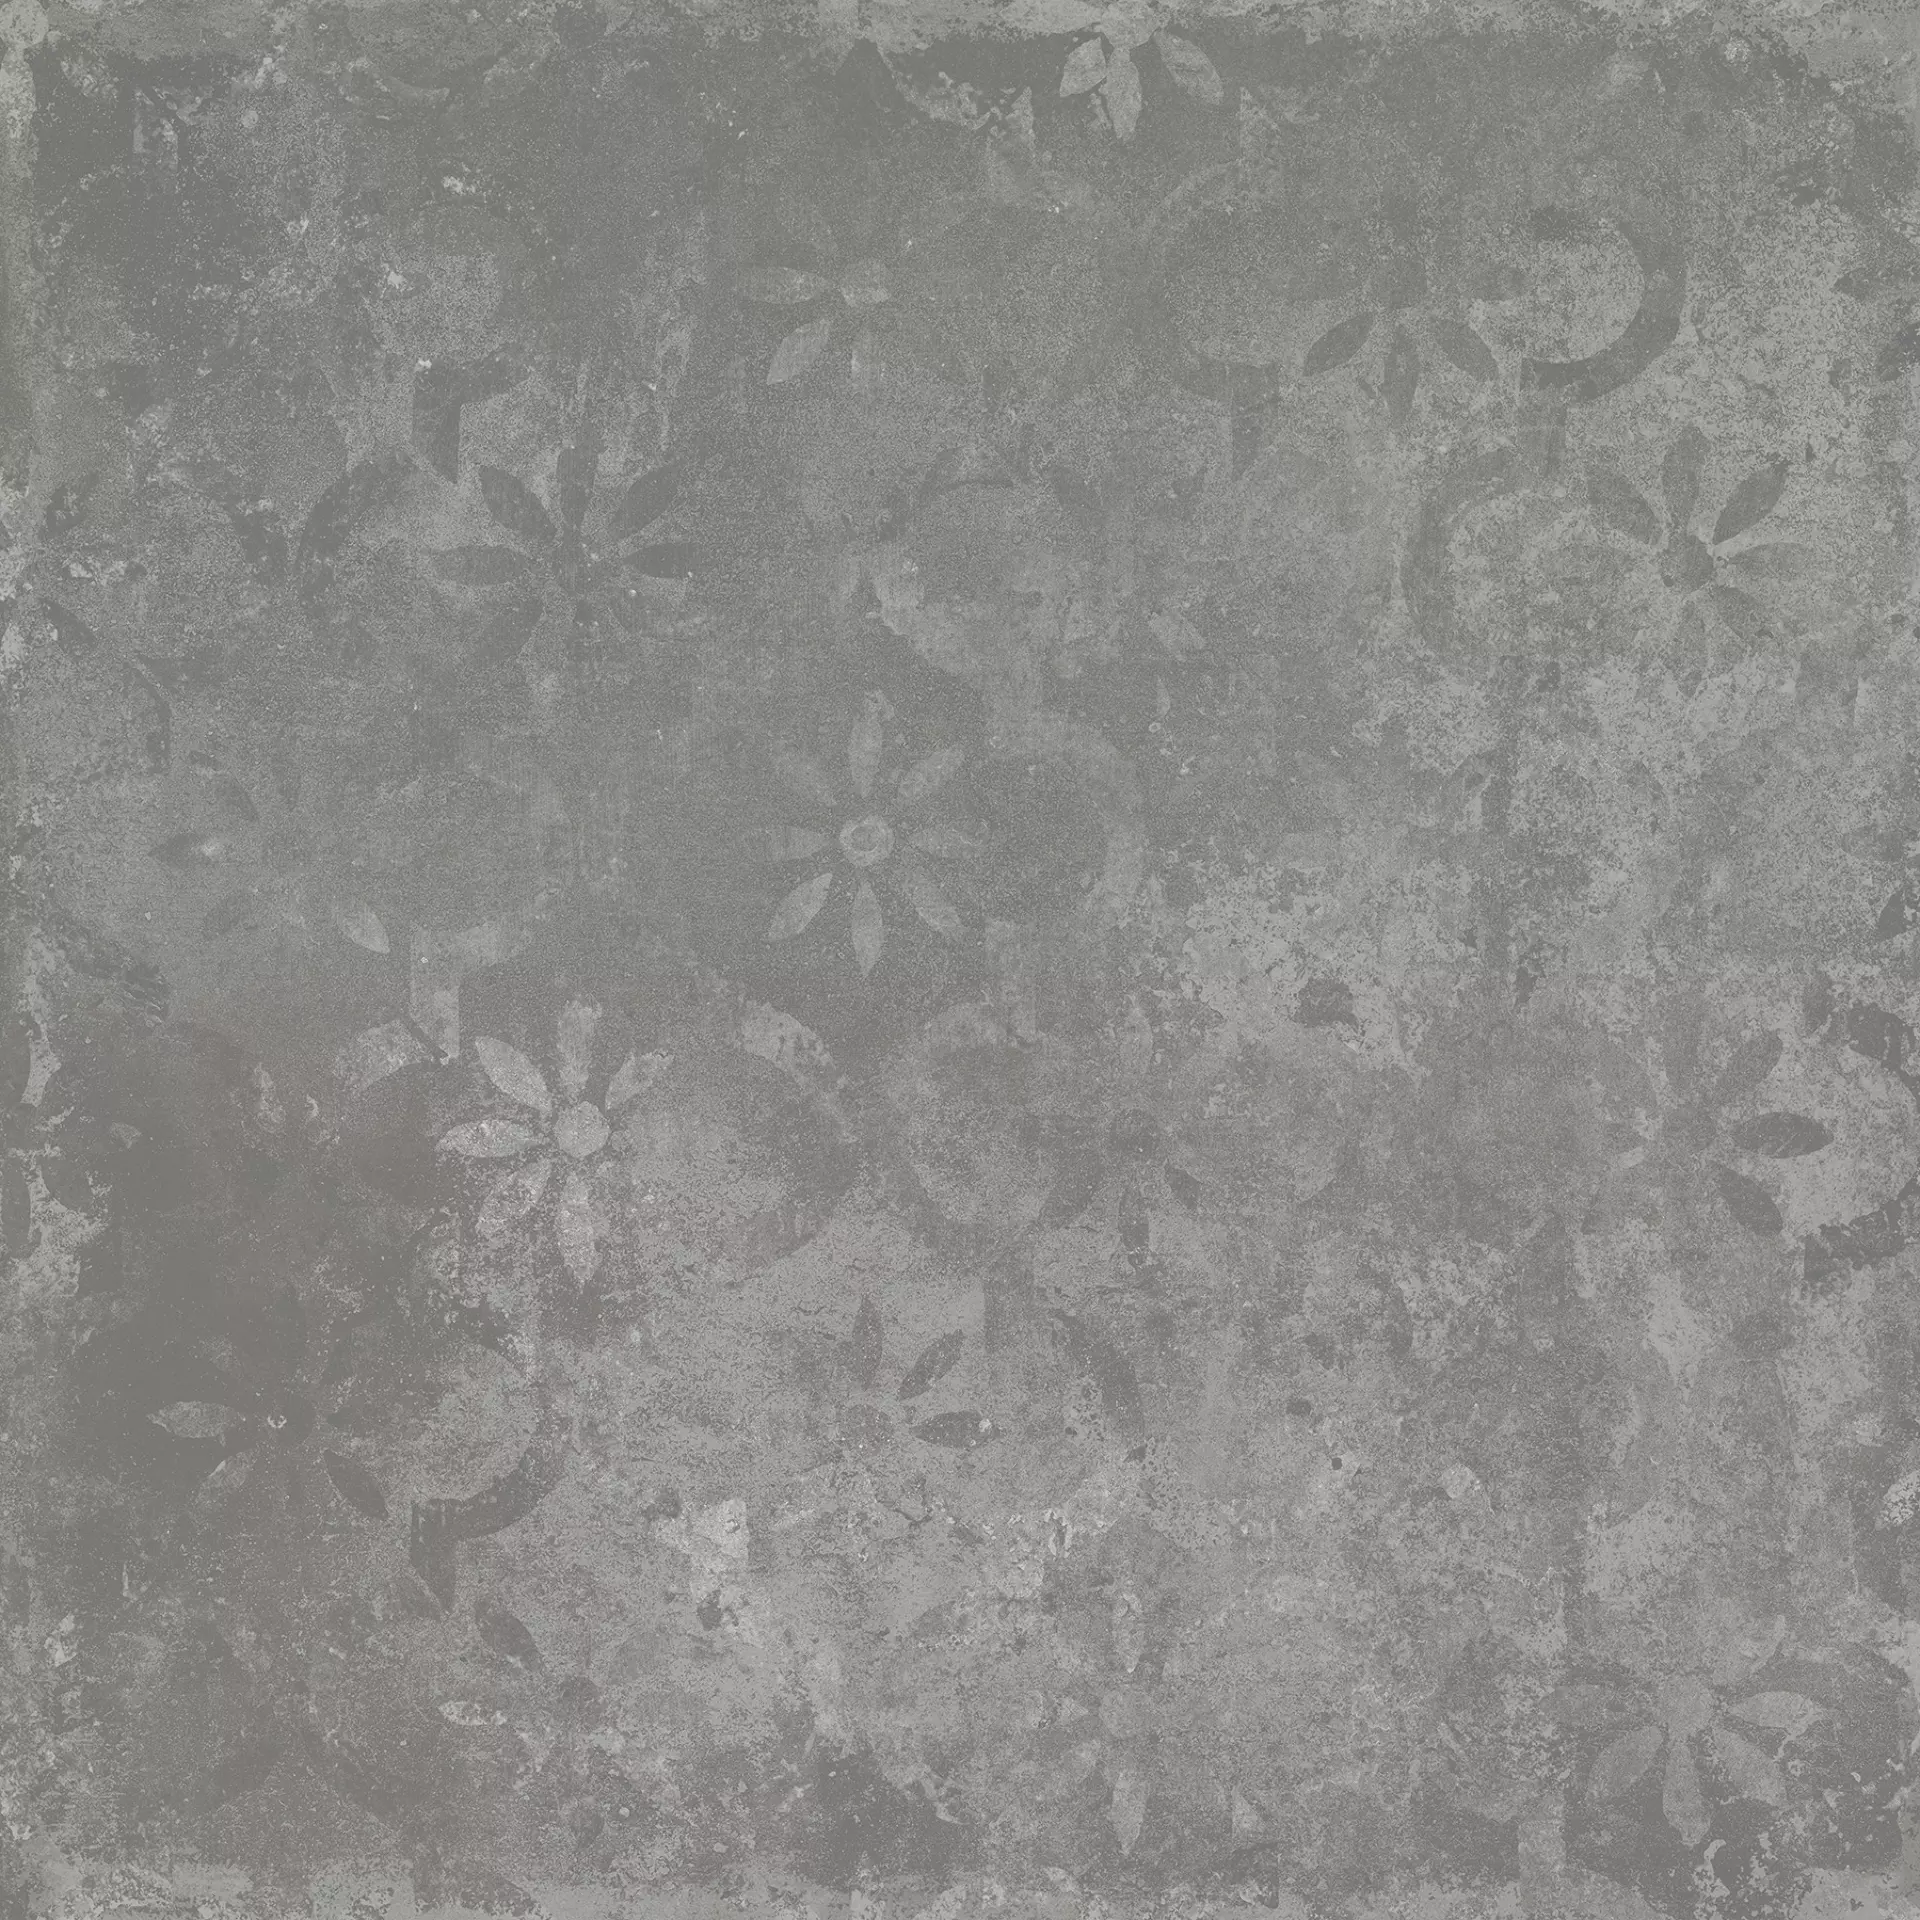 Tagina Cottotagina Grey Naturale Decor Stencil 116038 90x90cm 10mm